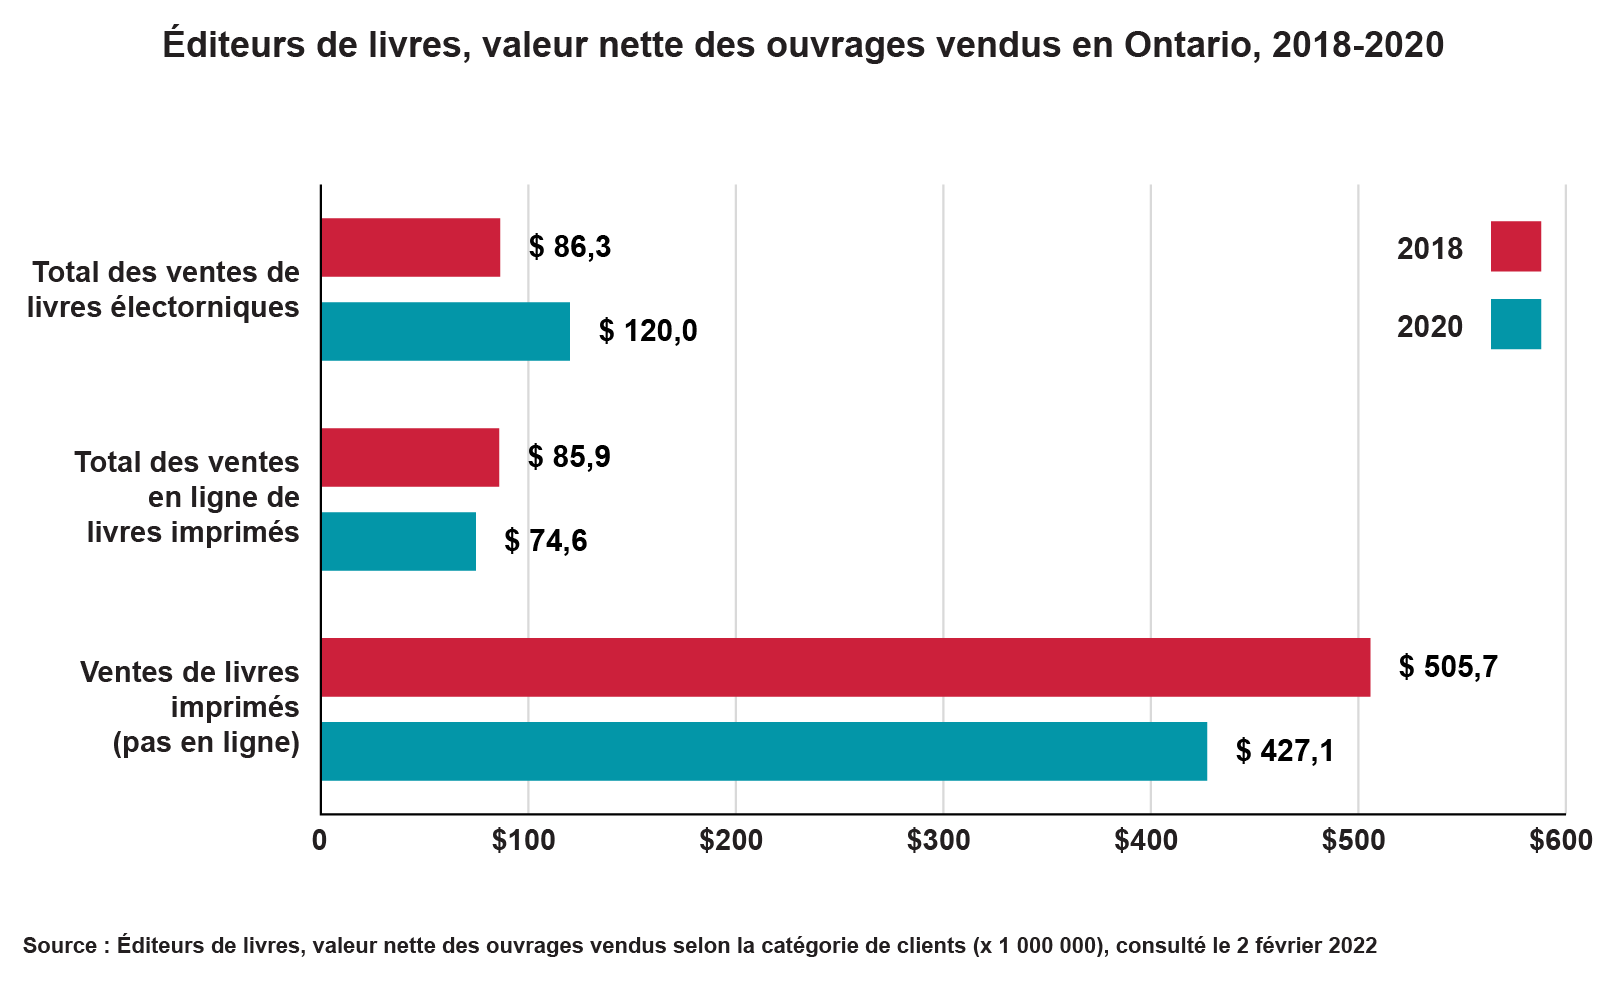 Diagramme à barres horizontales montrant la valeur nette des ventes de livres en Ontario, avec des données de 2018 et 2020. La vente de livres imprimés en personne (et non en ligne) reste la source la plus importante de revenus. Cependant, les ventes totales de livres électroniques en 2020 ont dépassé les ventes de 2018.